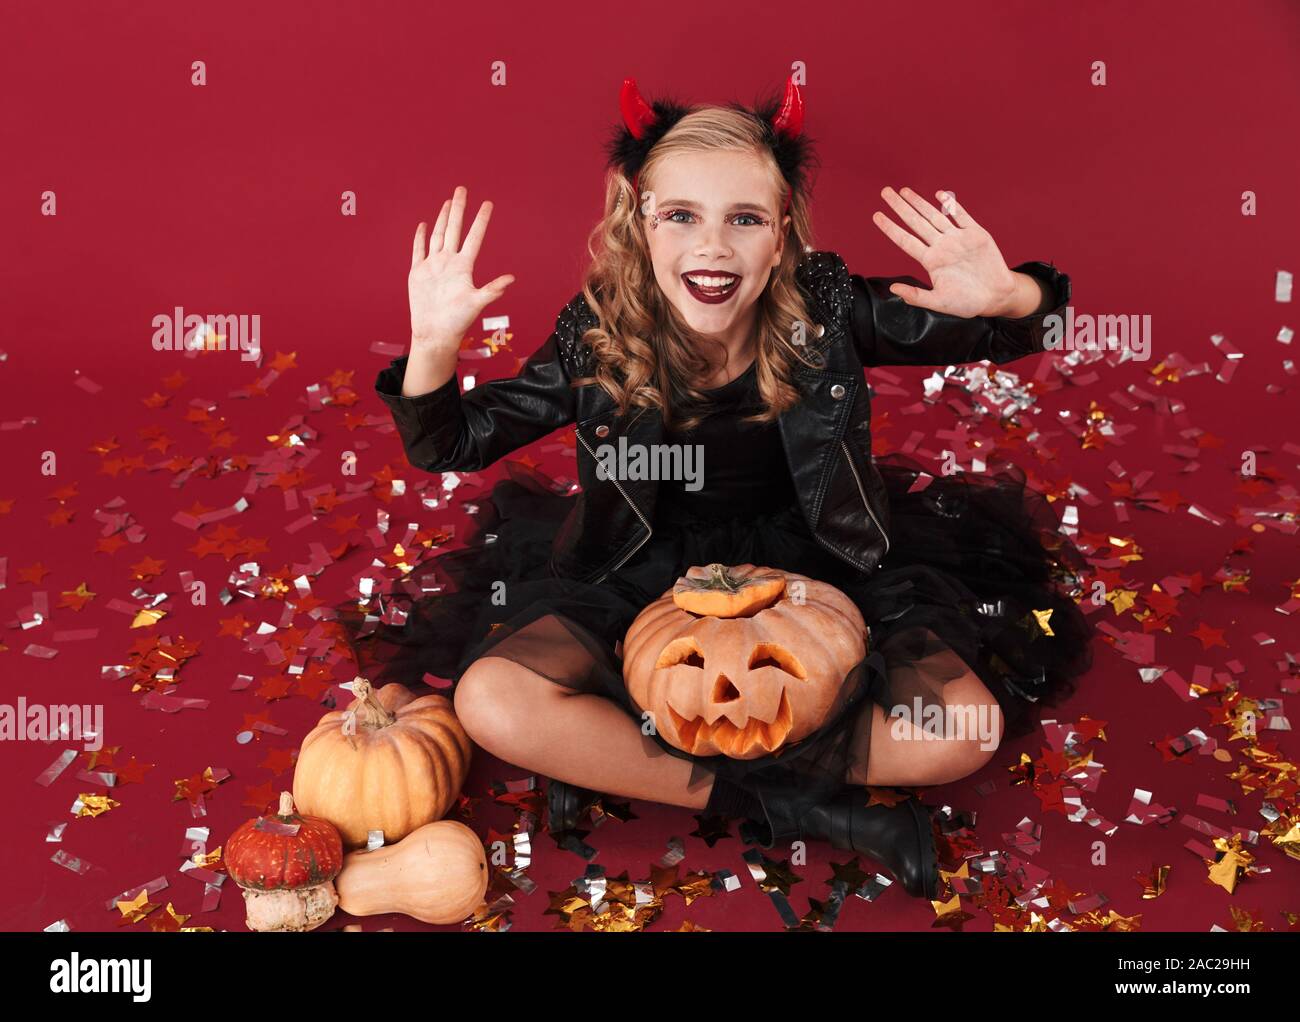 Bild von fröhlichen gerne kleine Mädchen Teufel Karneval halloween kostüm  über rote Wand Hintergrund holding Kürbis isoliert Stockfotografie - Alamy